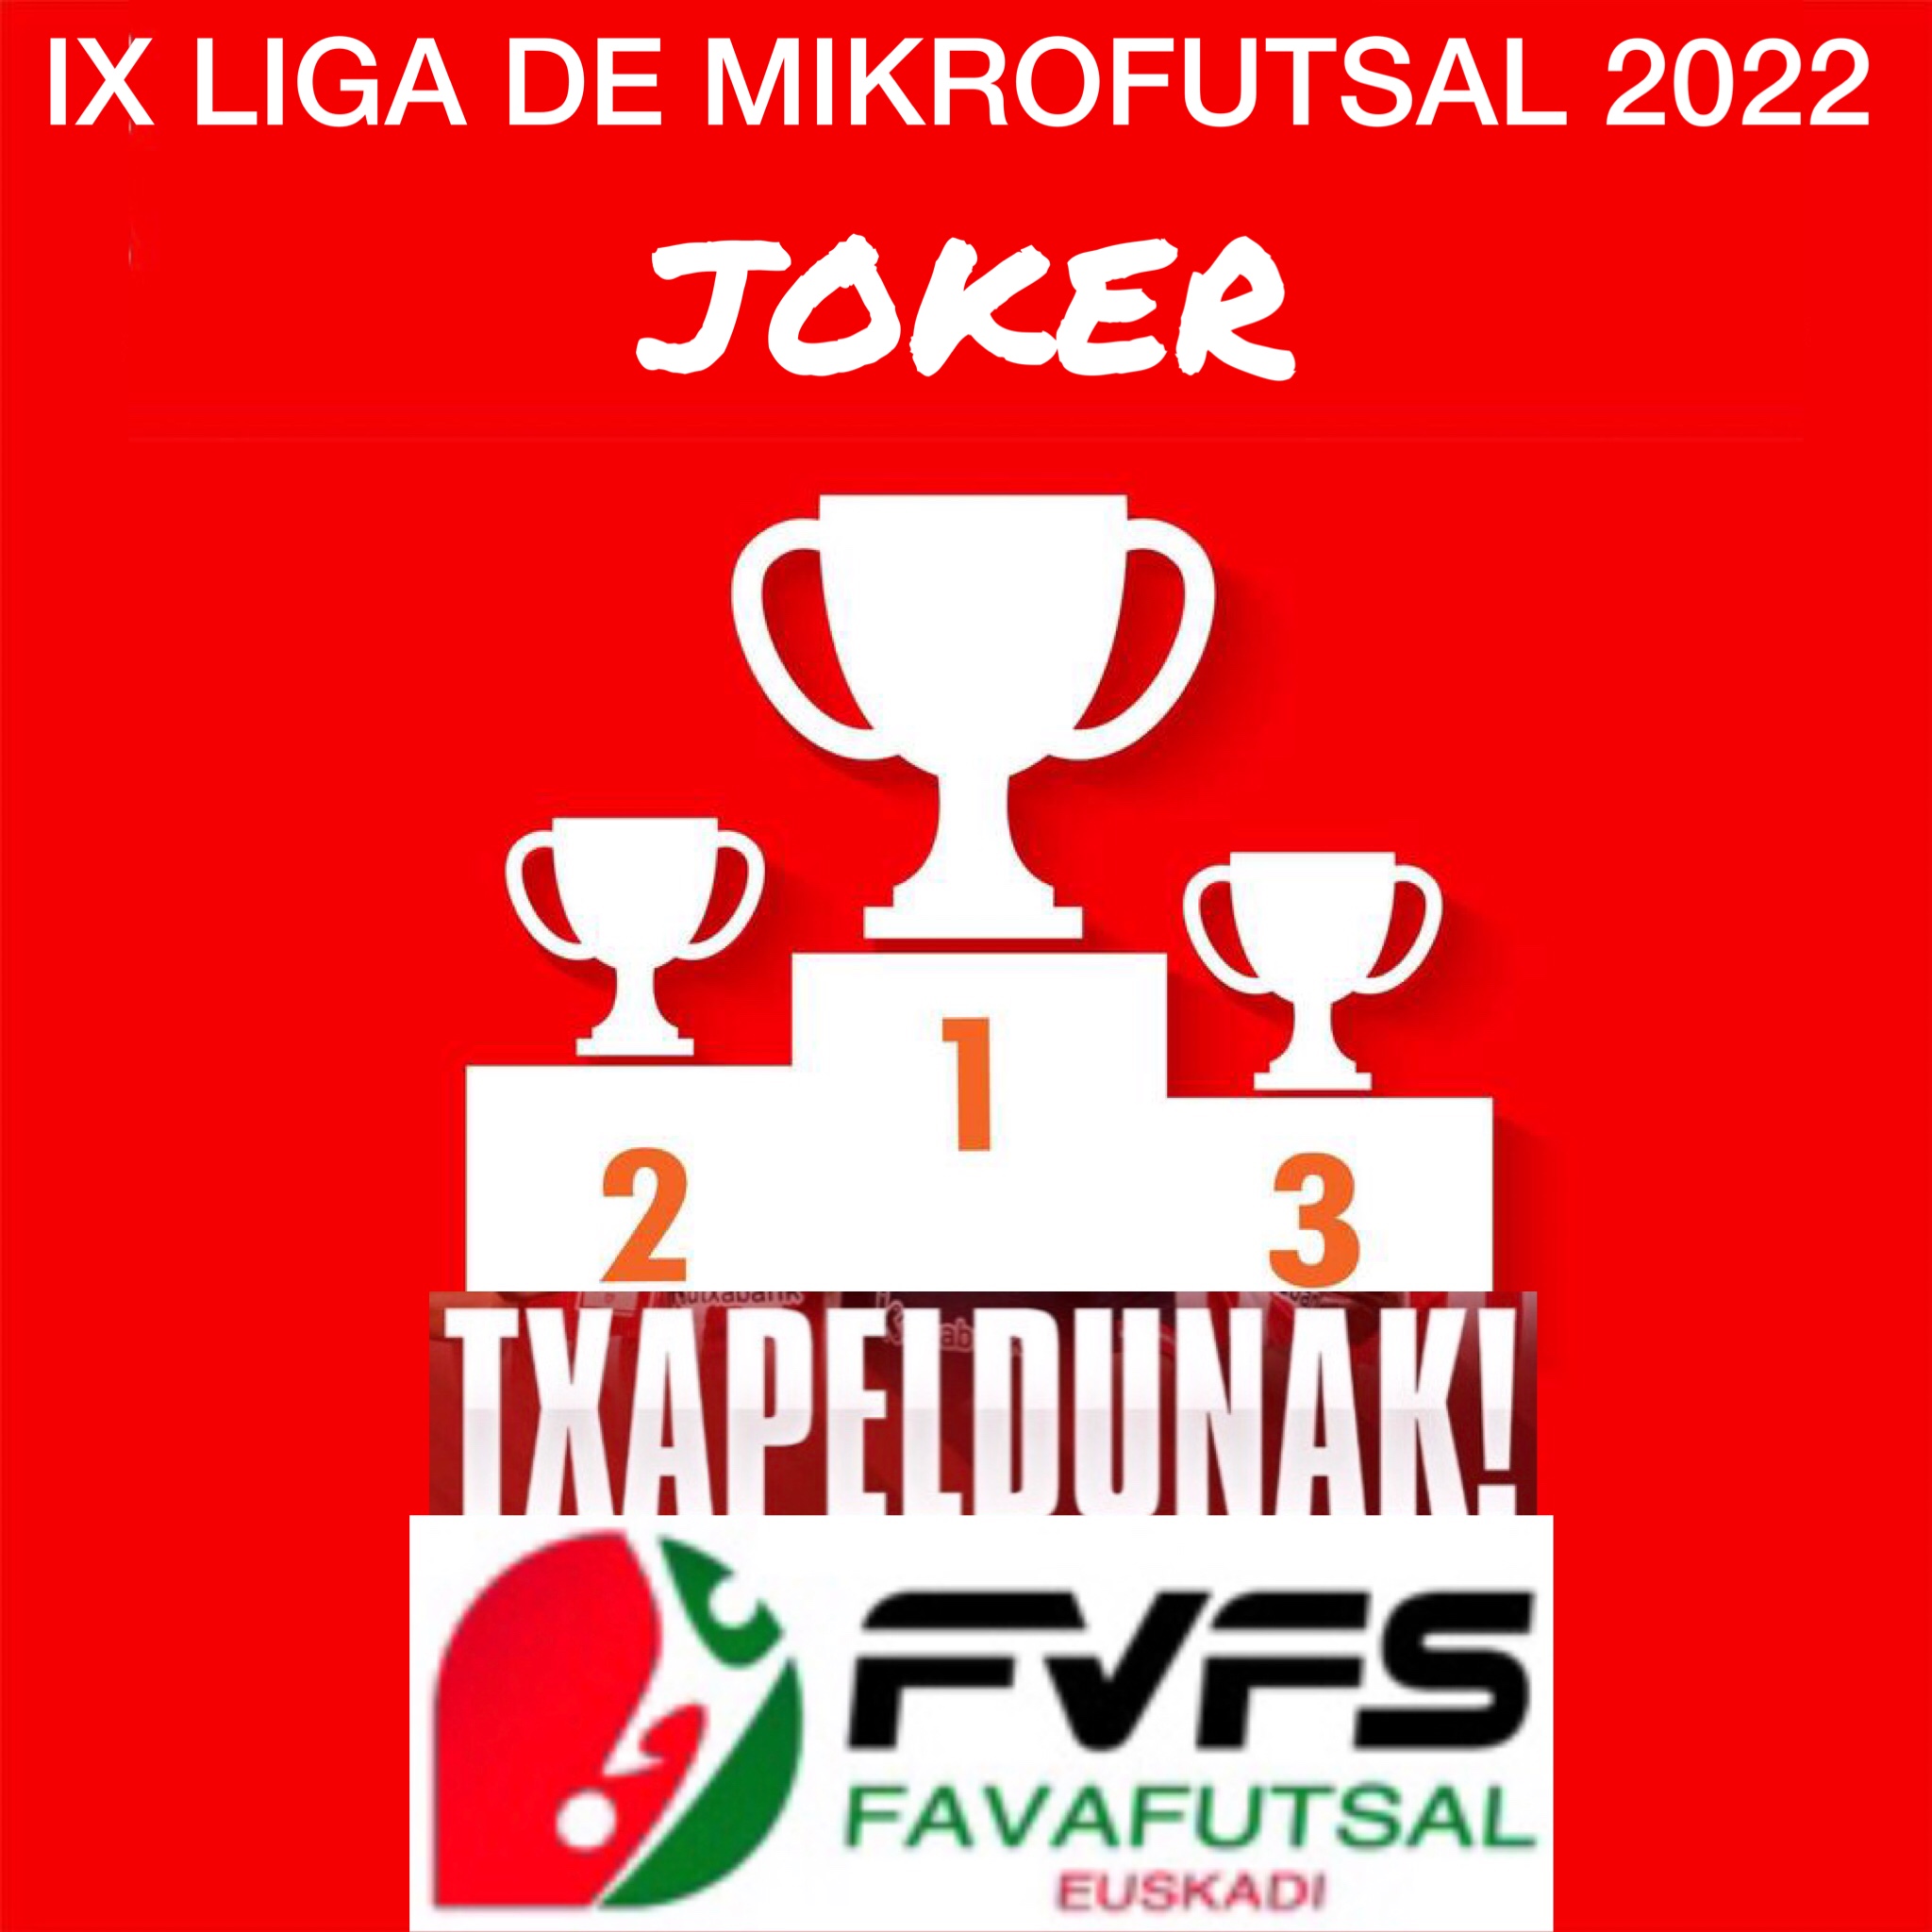 Joker campeón de la Liga de Mikrofutsal 2022.